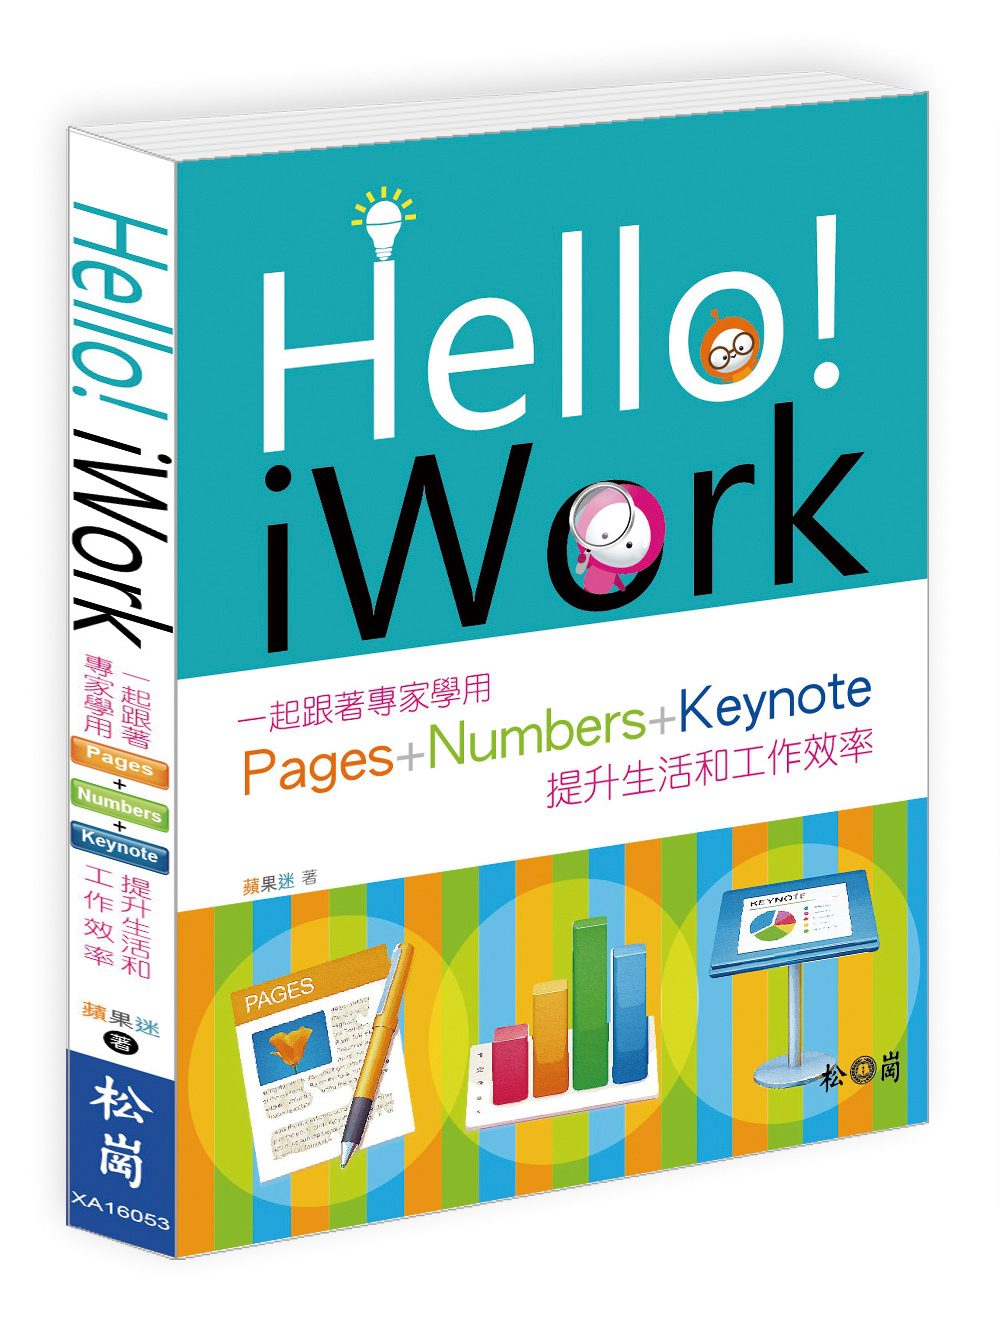 Hello！iWork：一起跟著專家學用Pages+Numbers+Keynote提升生活和工作效率